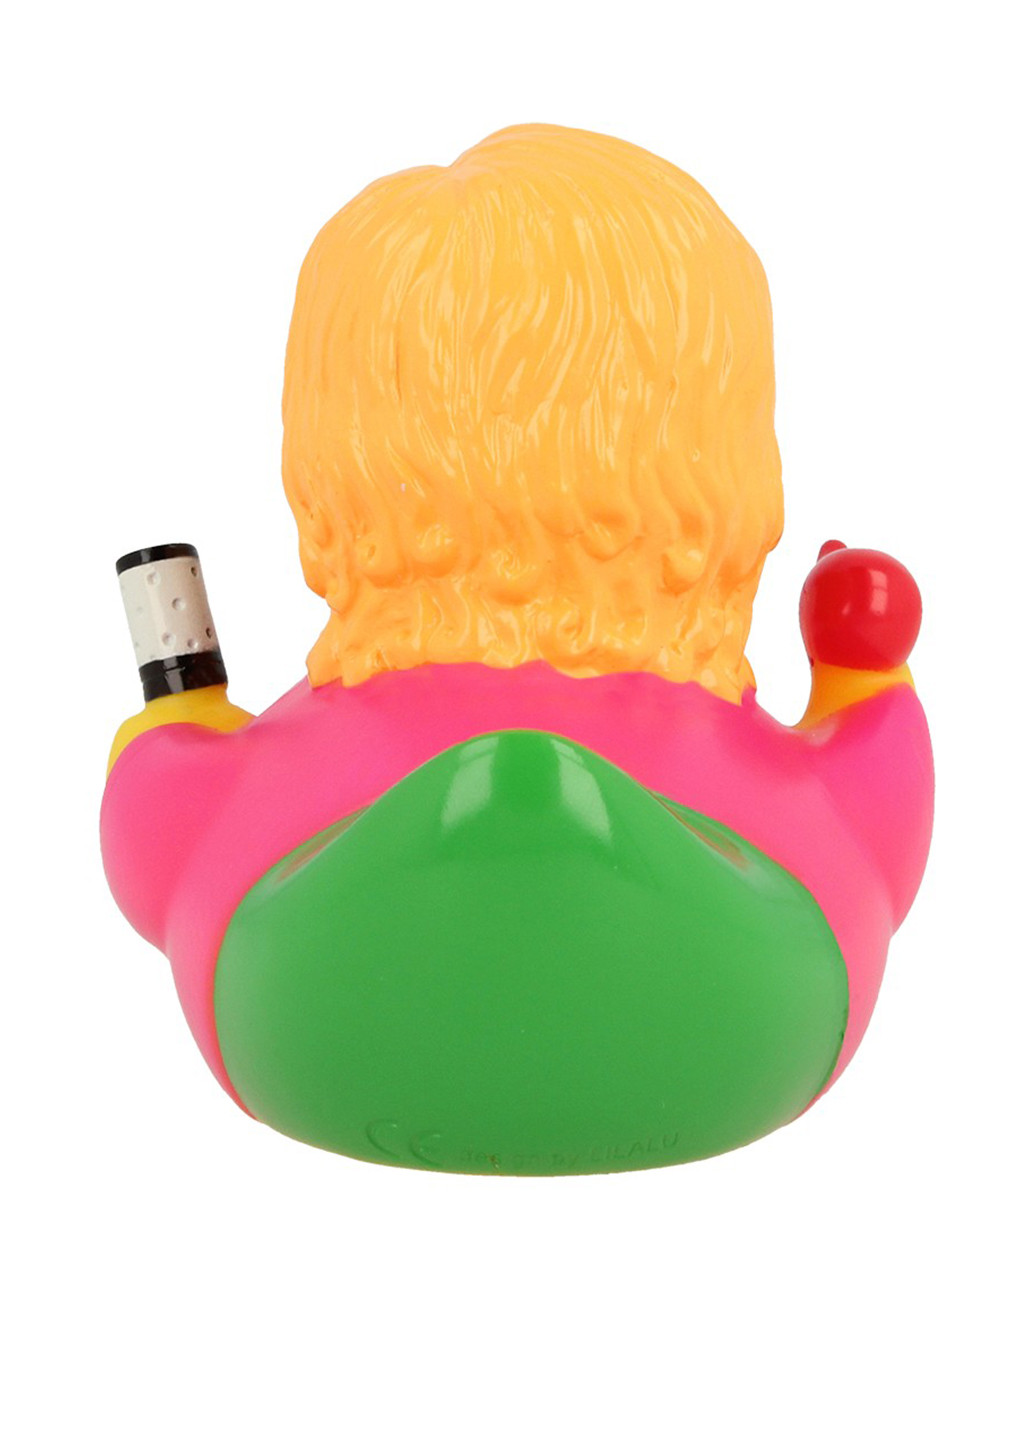 Іграшка для купання Качка Перукар, 8,5x8,5x7,5 см Funny Ducks (250618798)